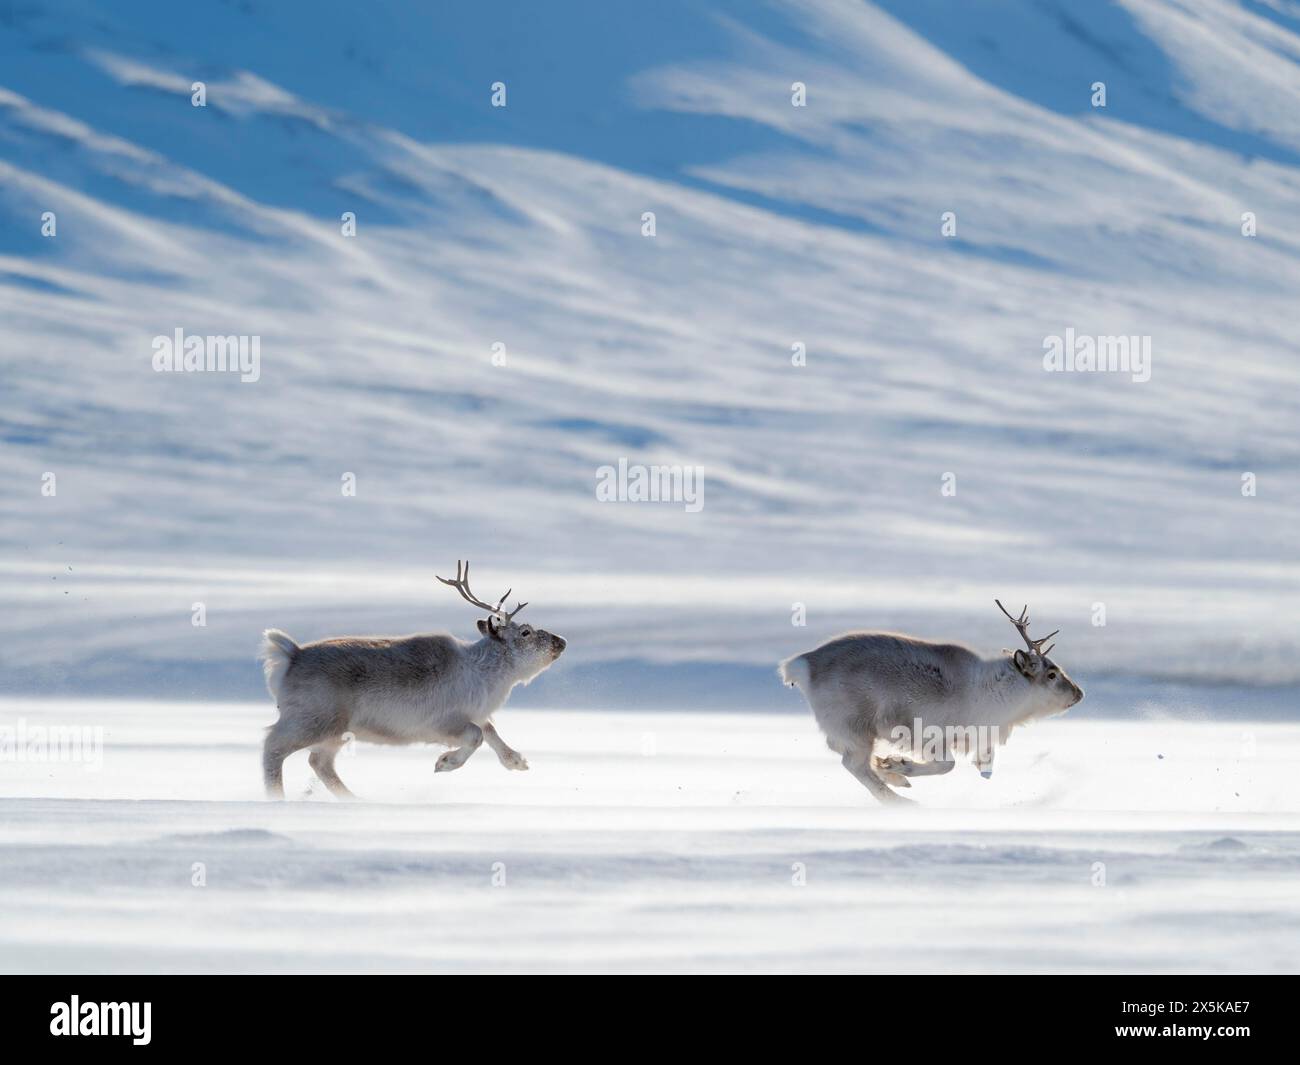 Le renne delle Svalbard nel Parco nazionale di Van Mijenfjorden, una sottospecie endemica di renne, che vive solo nelle Svalbard e non è mai stata addomesticata. Regioni polari, inverno artico. Foto Stock